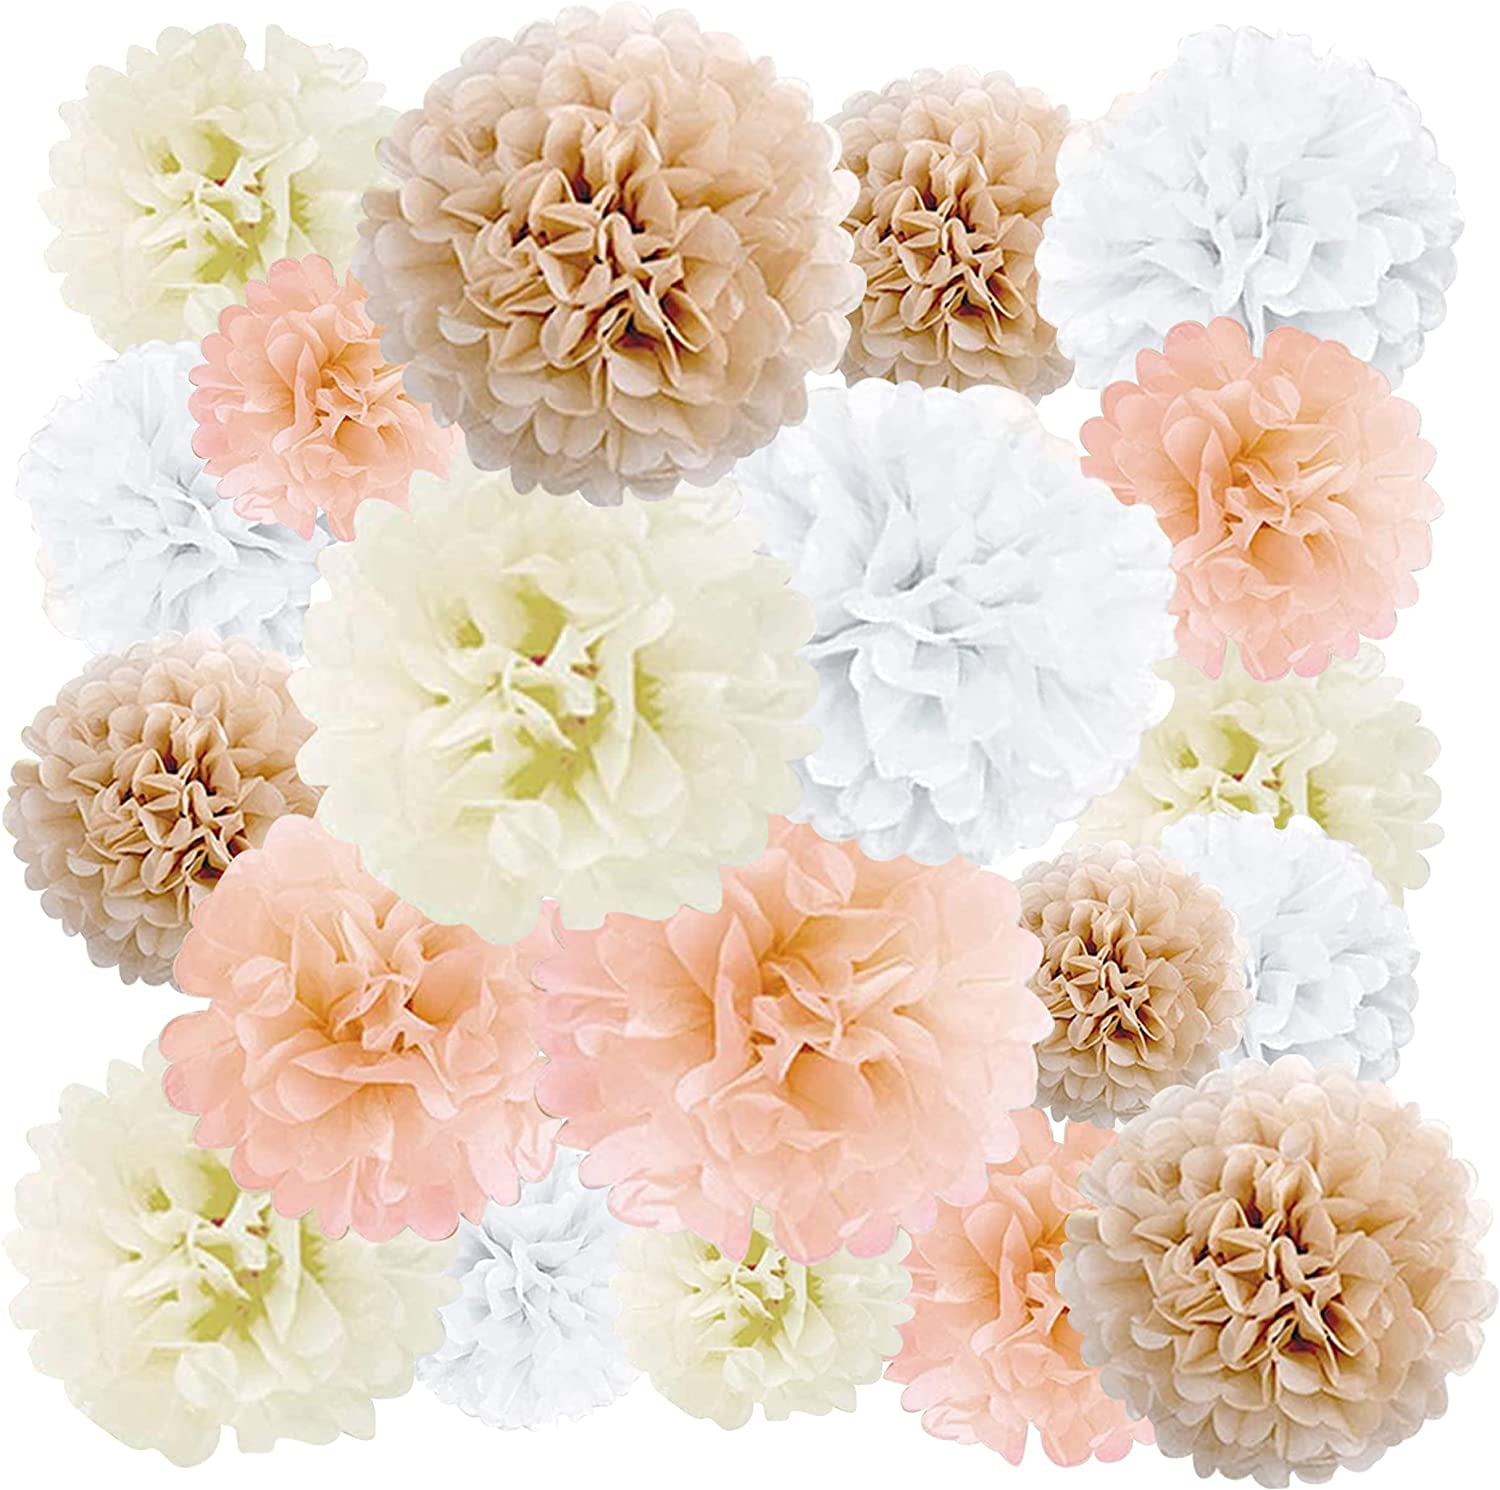 20 Pcs Blush Pink Dusty Rose Mauve Cream Tissue Paper Pom Poms Backdrop Flowers for sale online 